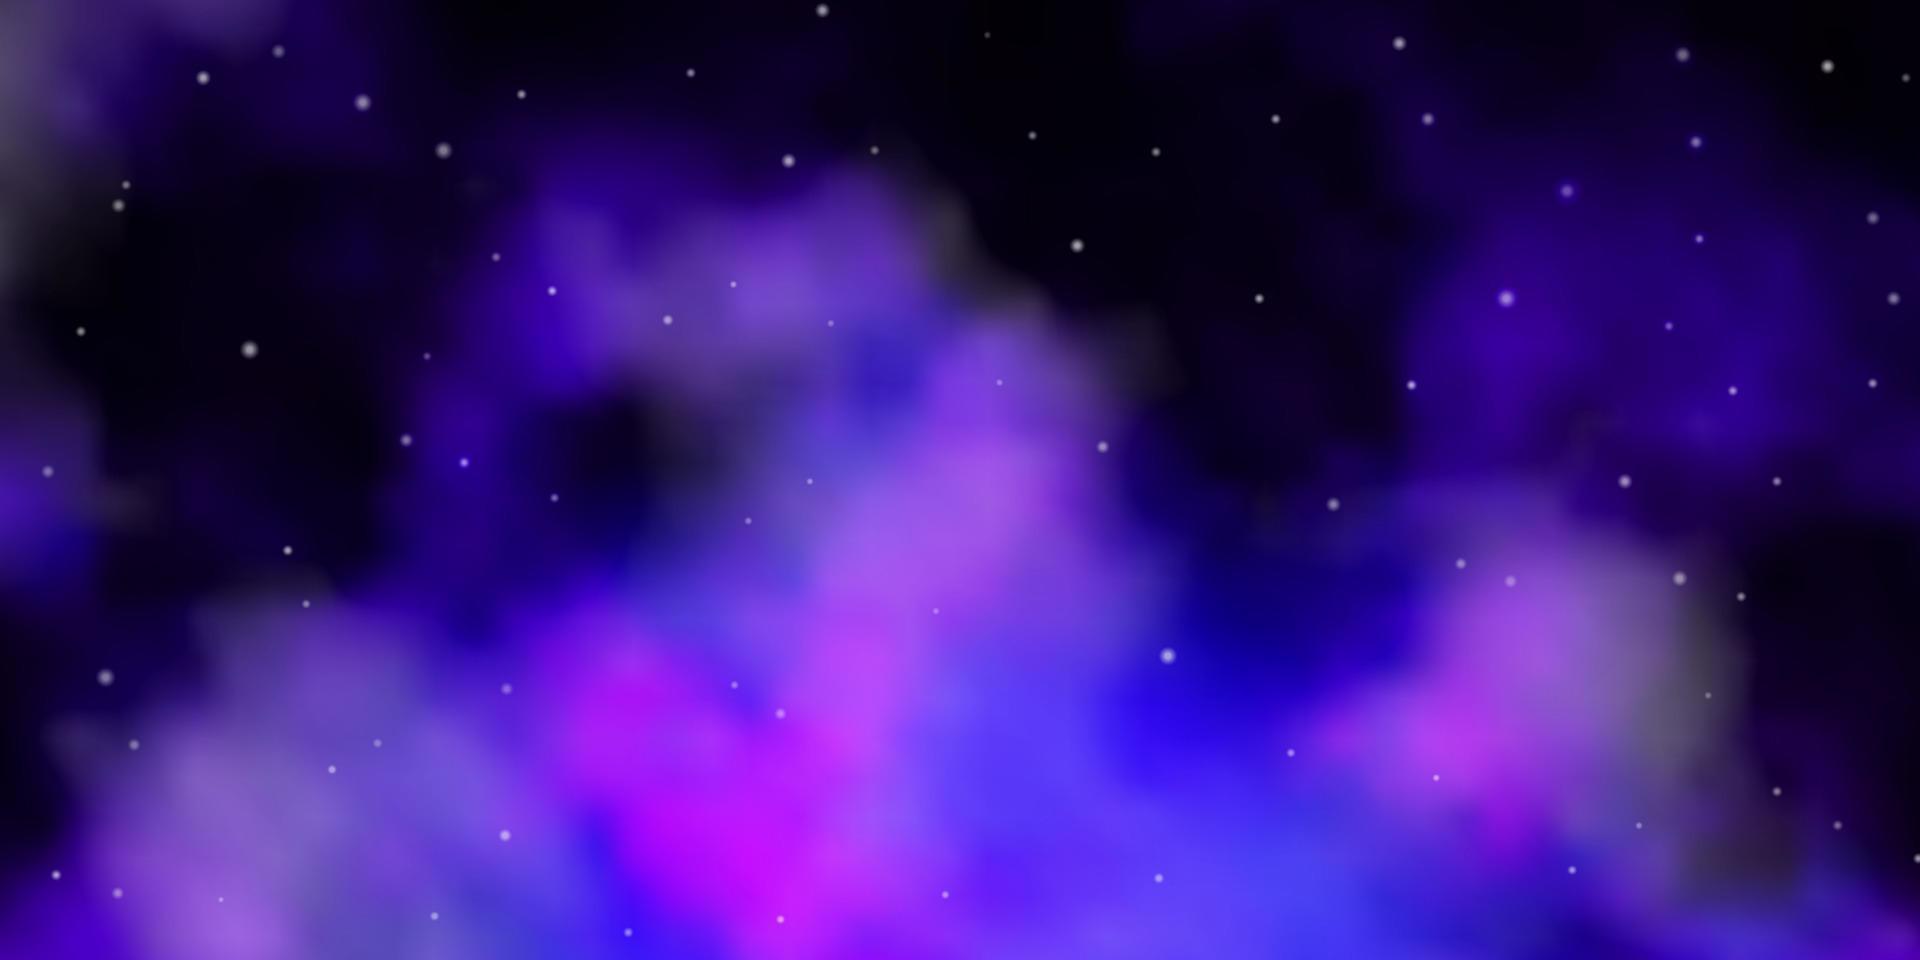 texture vecteur violet foncé avec de belles étoiles.